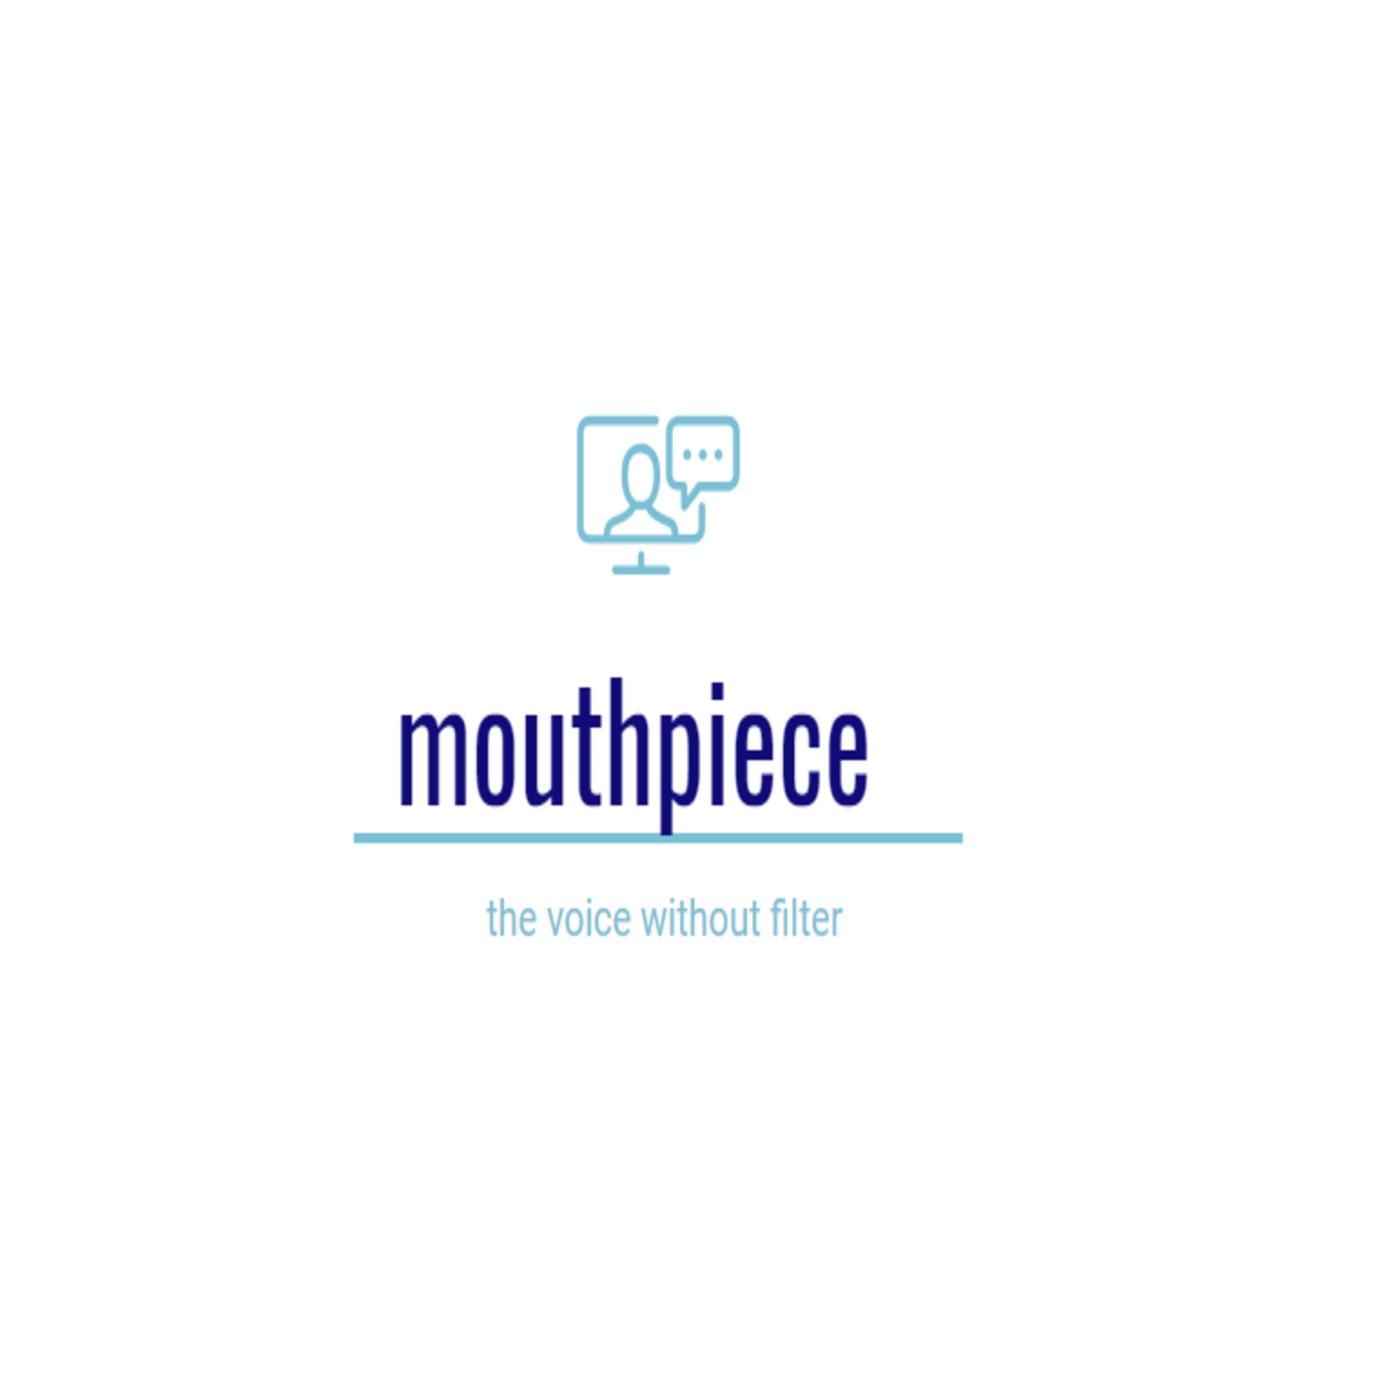 mouthpiece